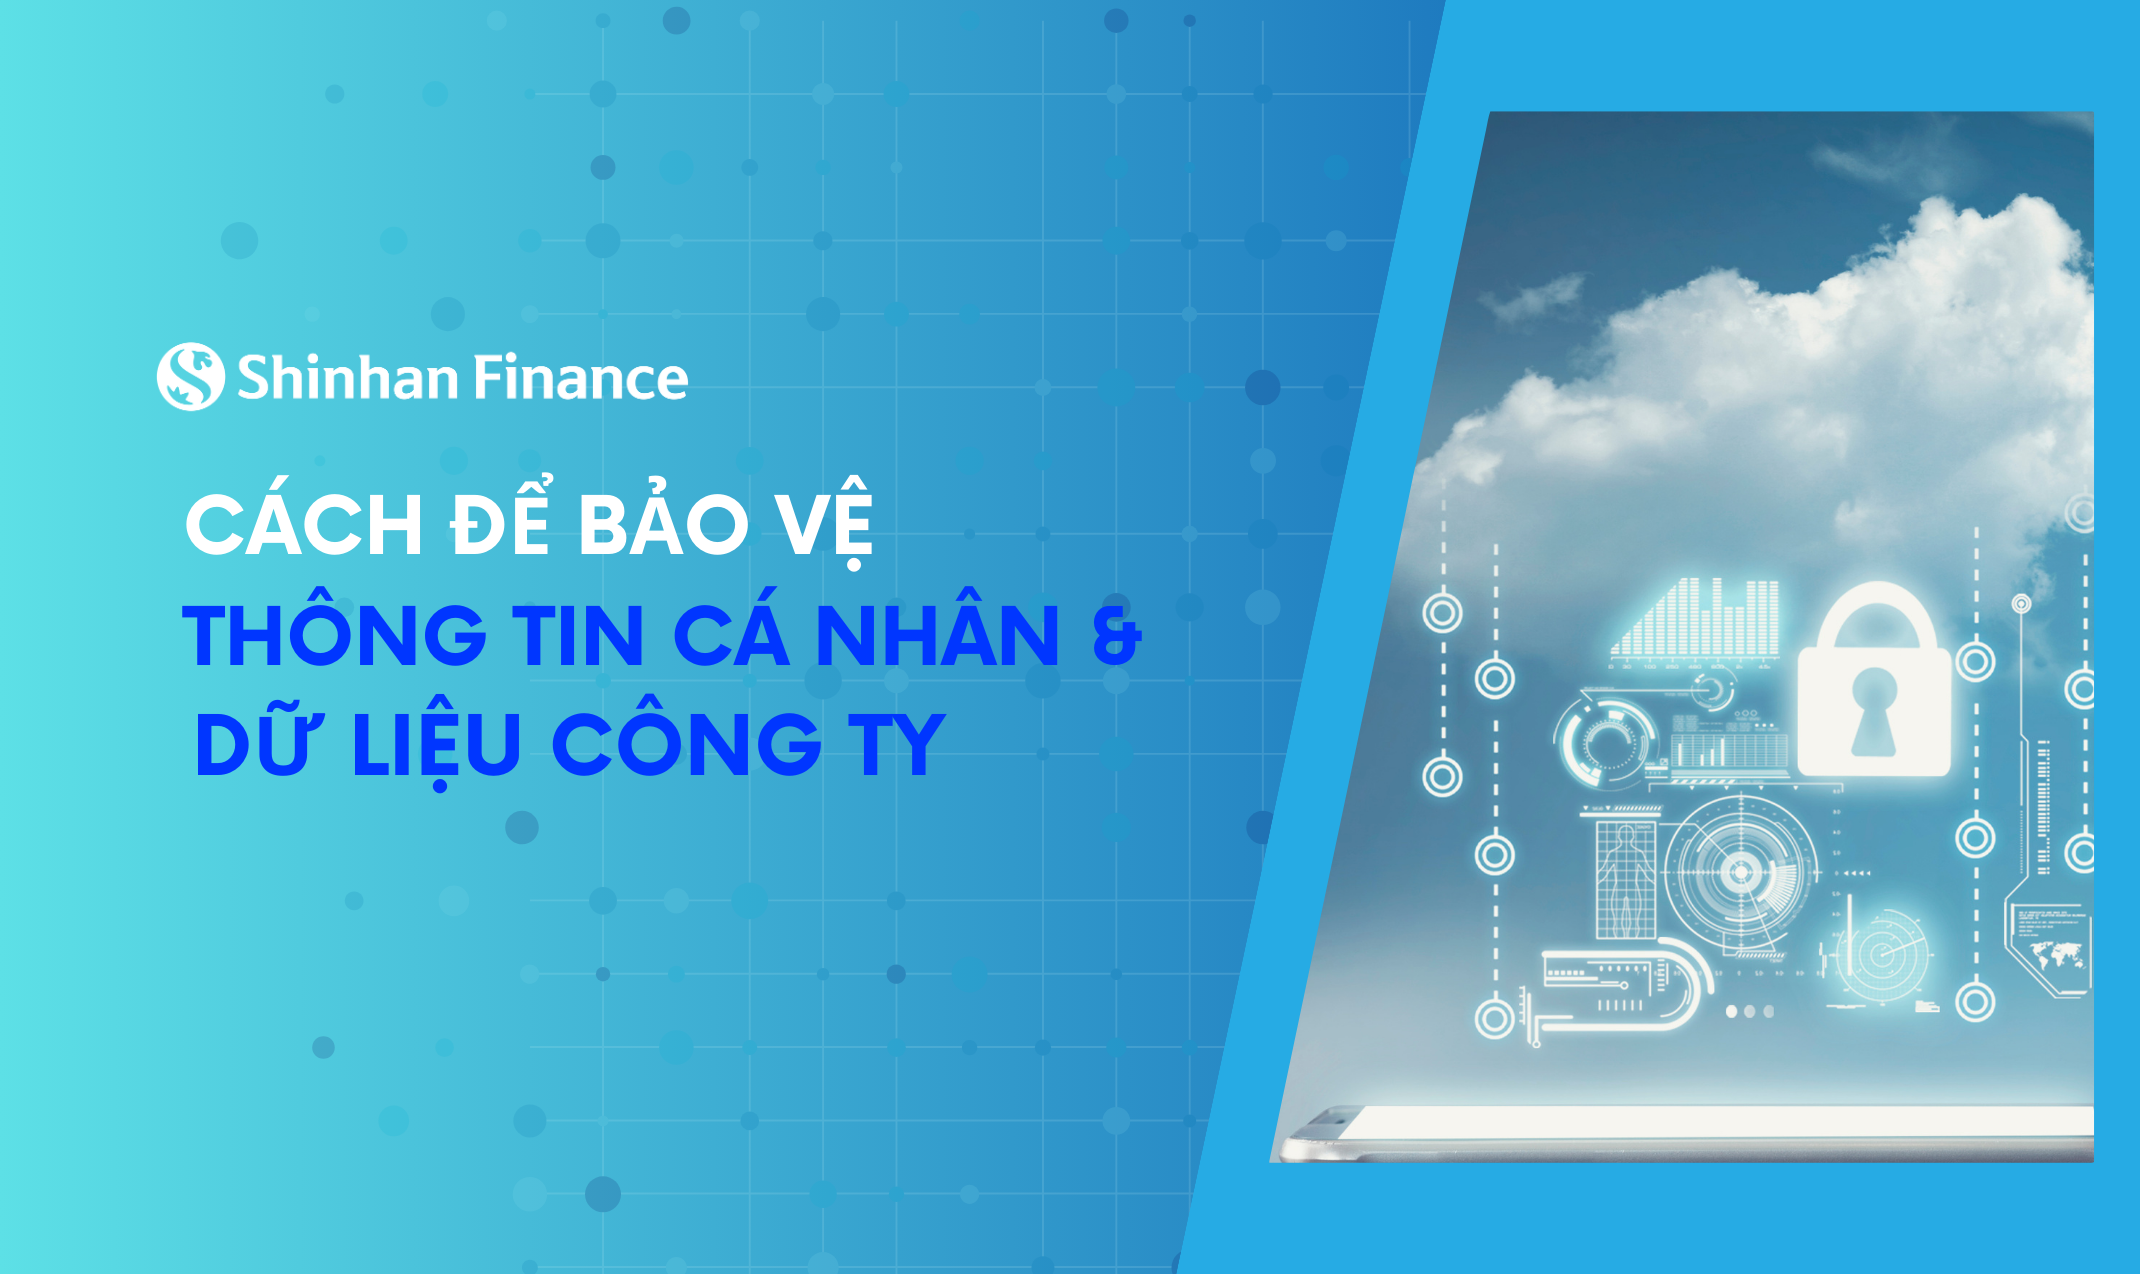 Chuyên gia từ Shinhan Finance “bật mí” cách để người dùng bảo vệ thông tin cá nhân, dữ liệu Công ty